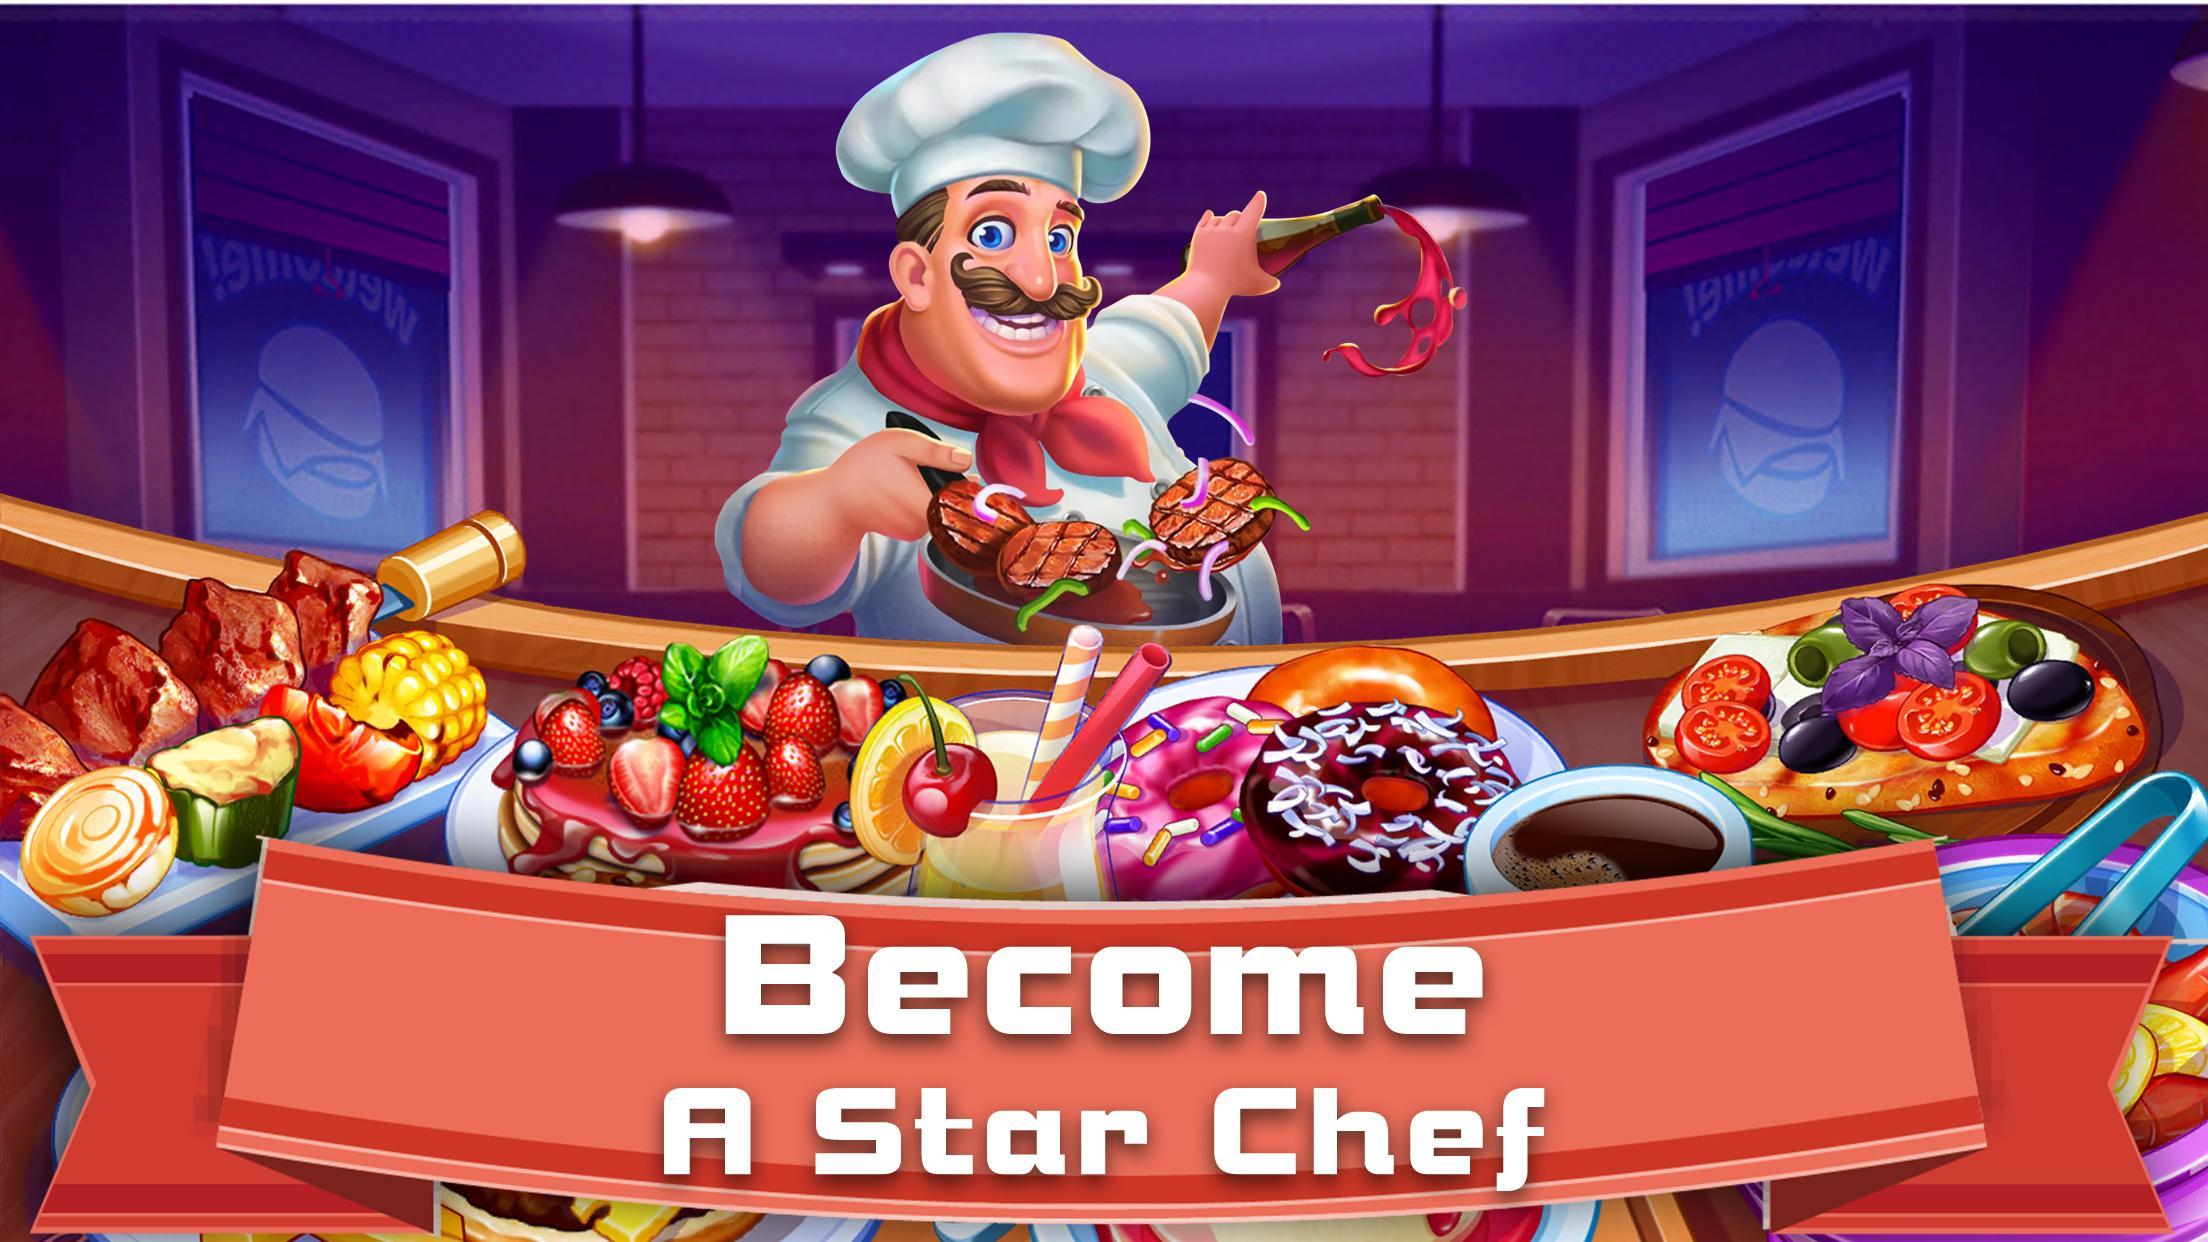 Screenshot 1 of Кулинарная история: кулинарные игры с тайм-менеджментом 1.0.5